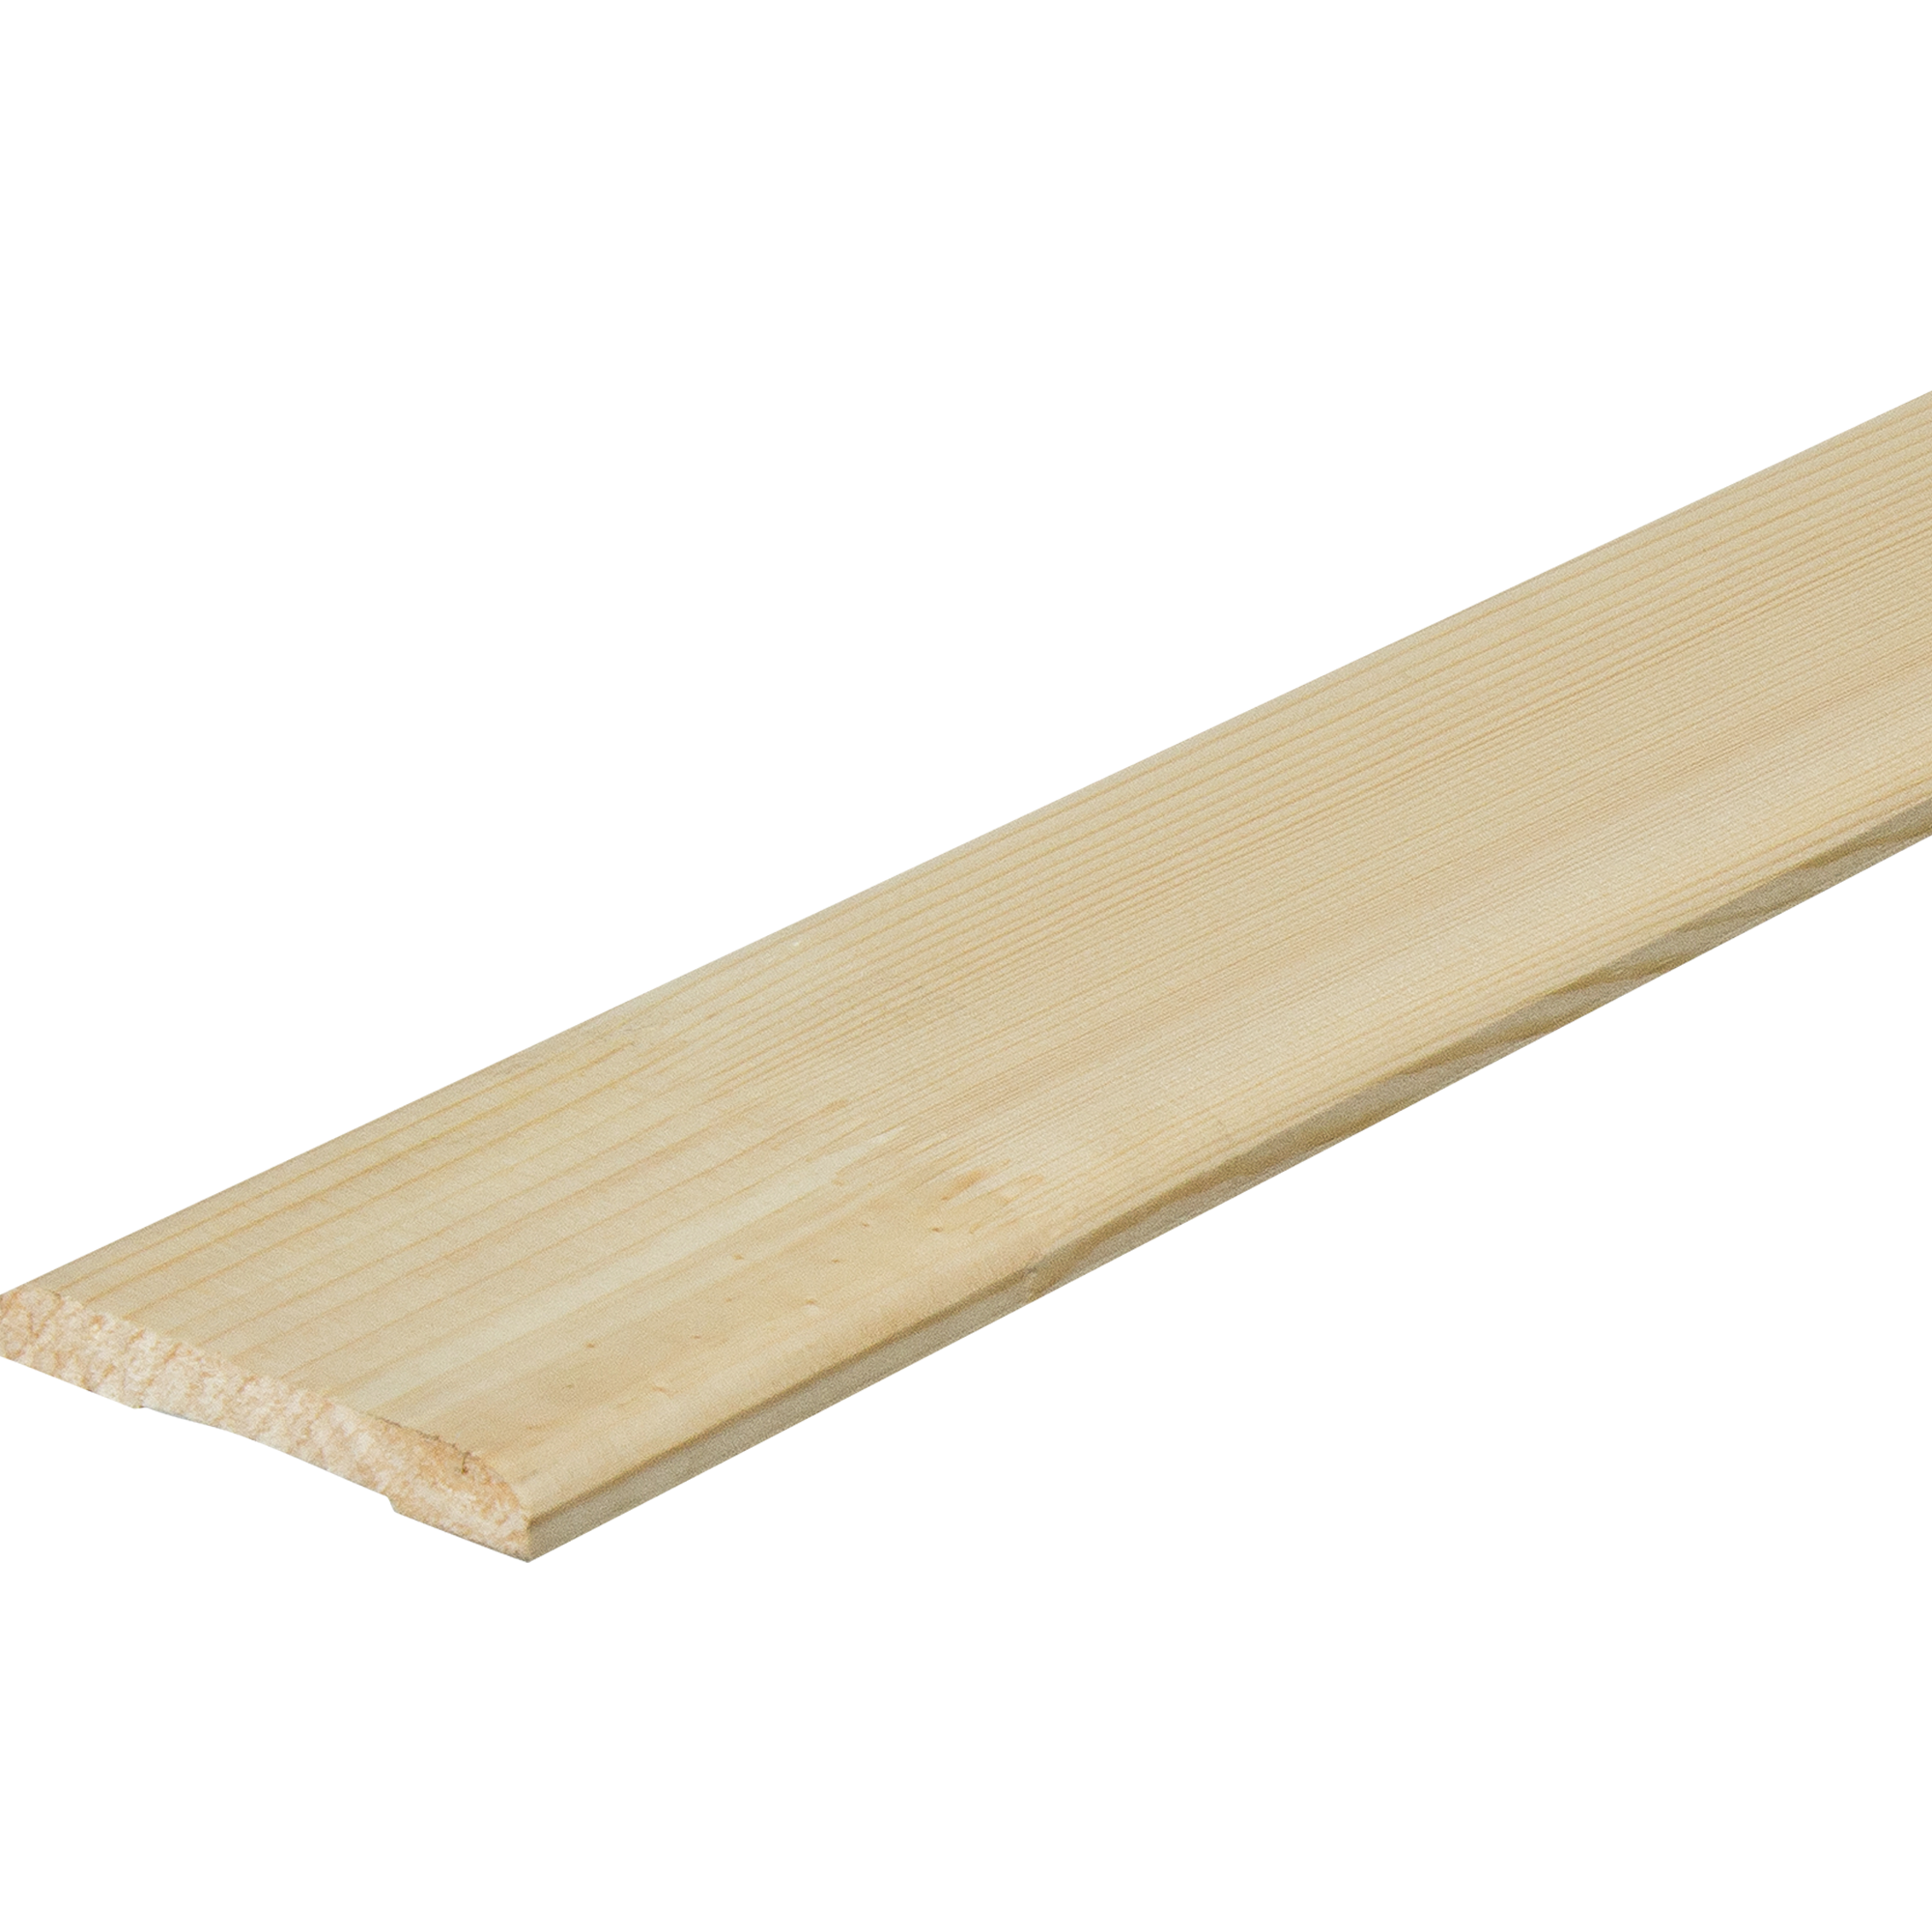 Как сделать деревянный наличник?